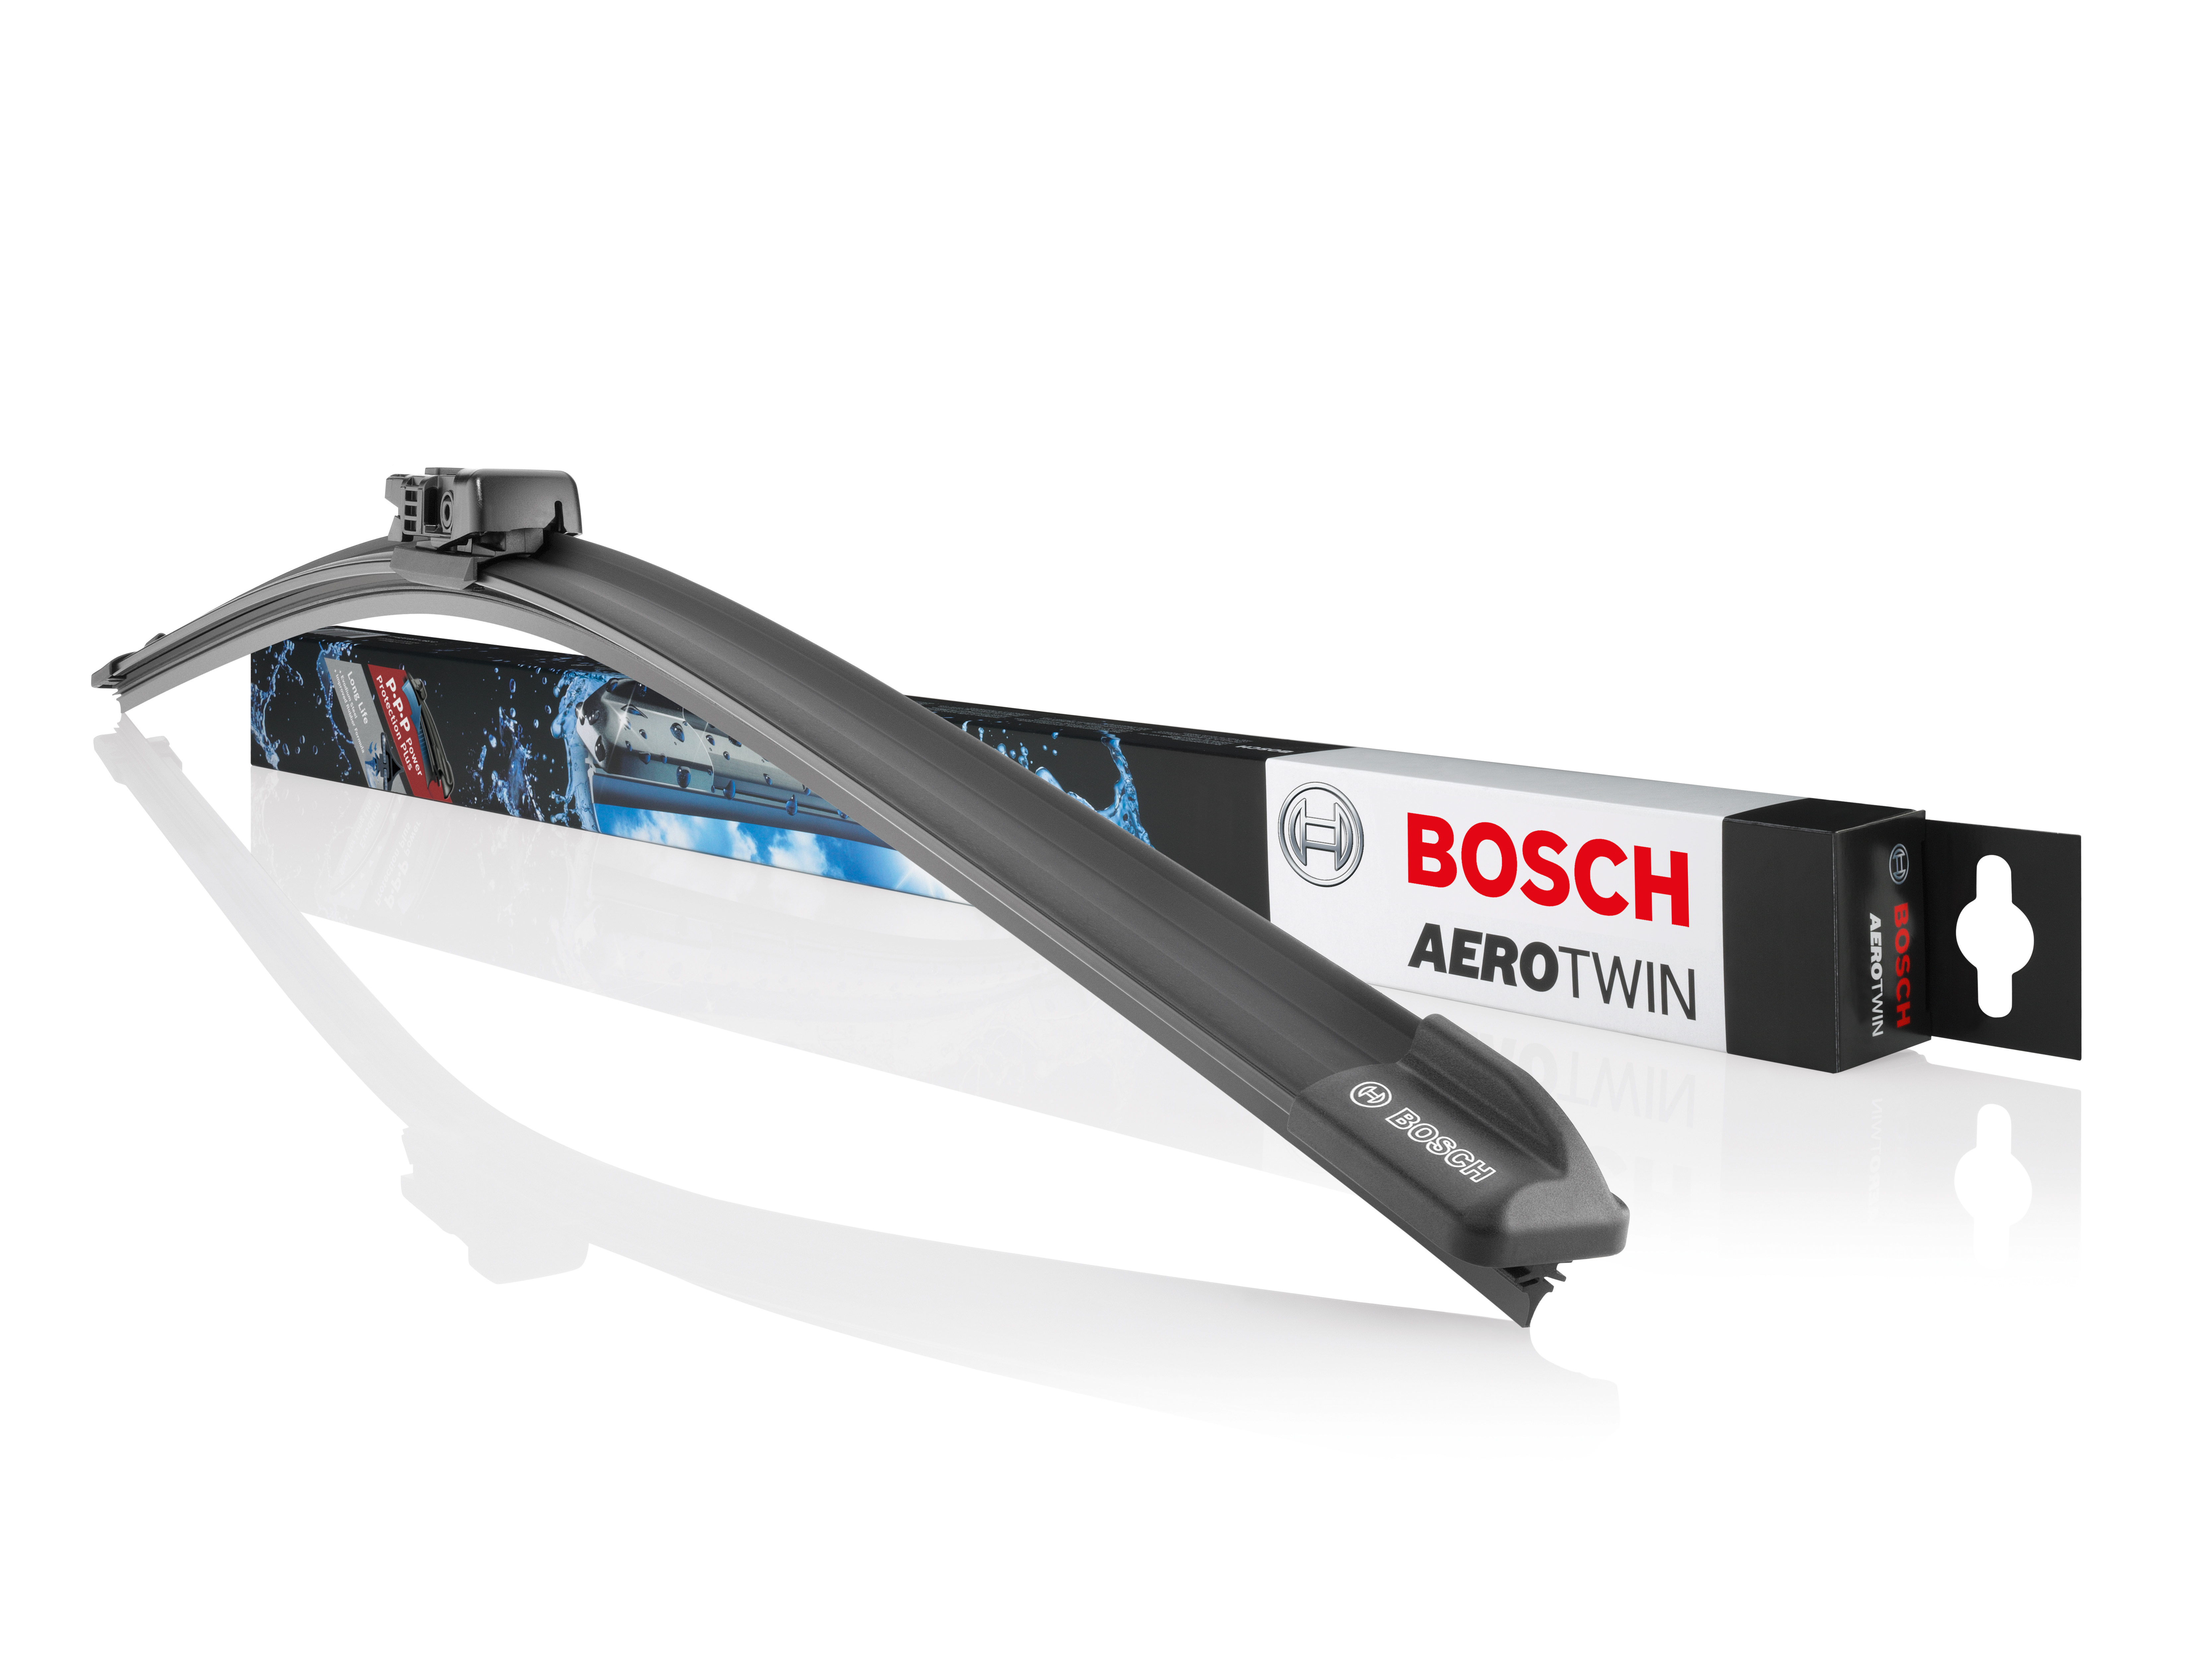 Wycieraczki Bosch Aerotwin ze zmodyfikowa-nym profilem gumowego pióra.